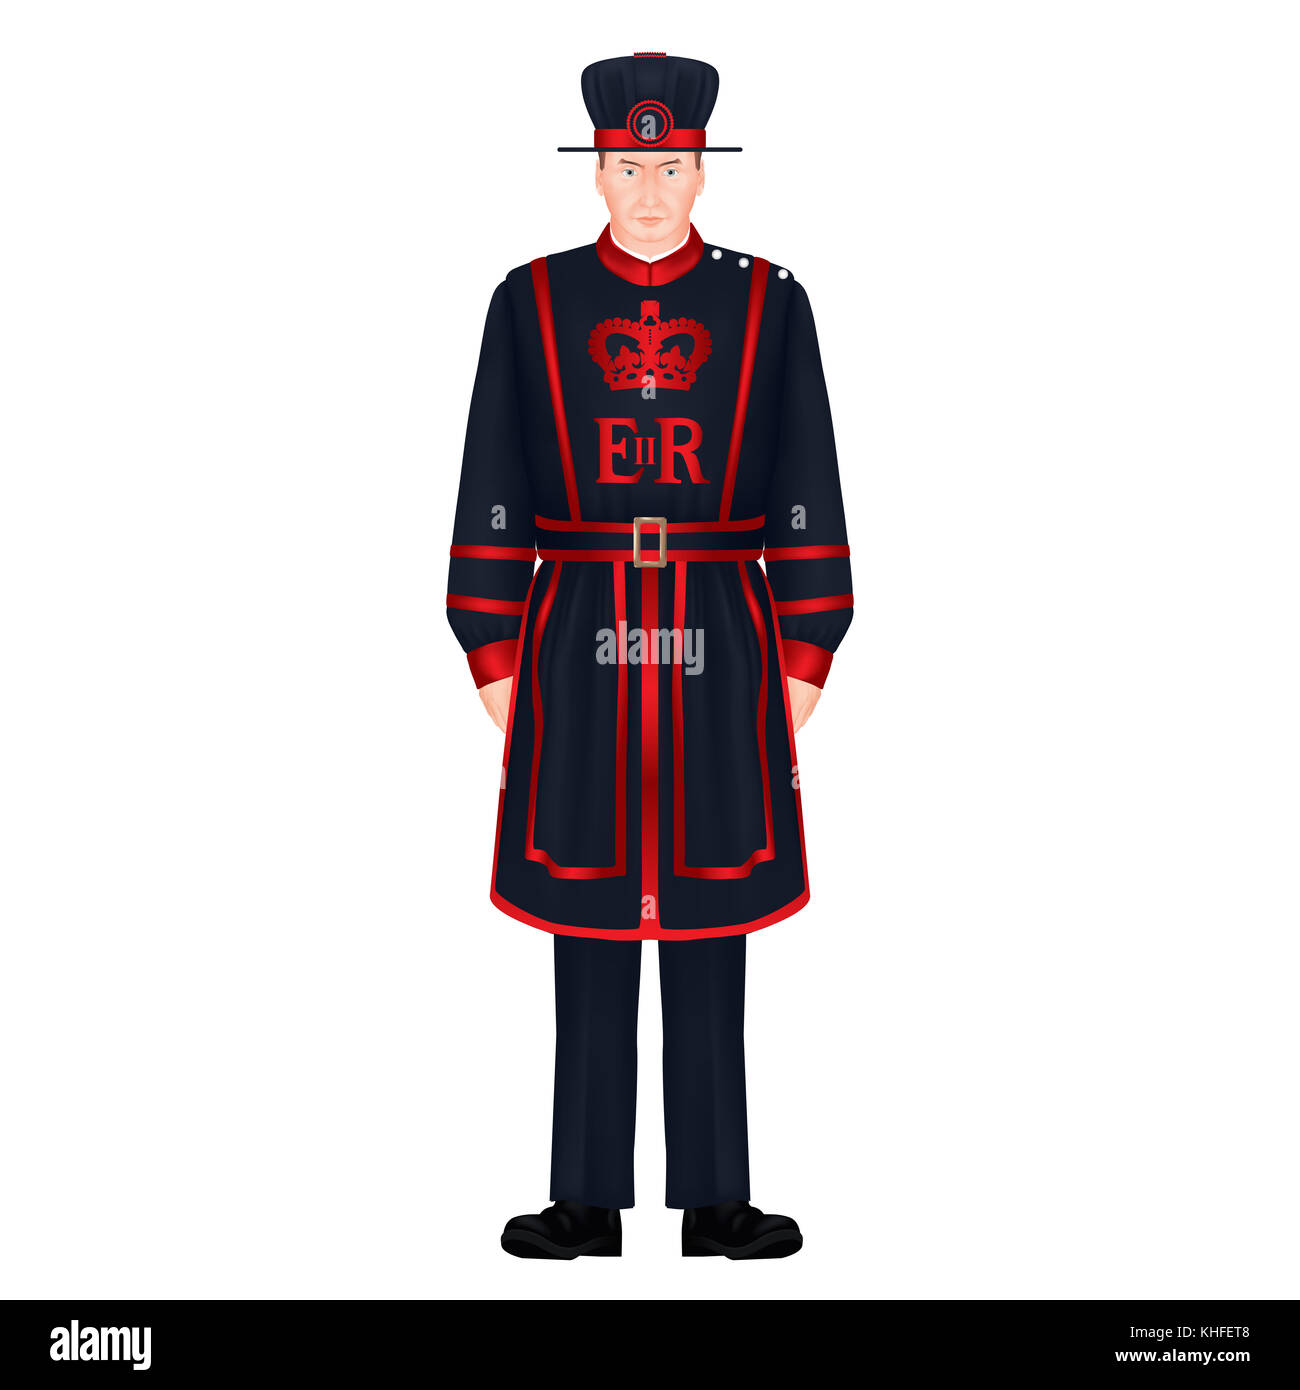 Beefeater Soldat - Yeoman Warder - Royal Guard - London Charakter - Symbole - sehr detaillierte, realistische, isolierte Abbildung: Weißer Hintergrund Stockfoto